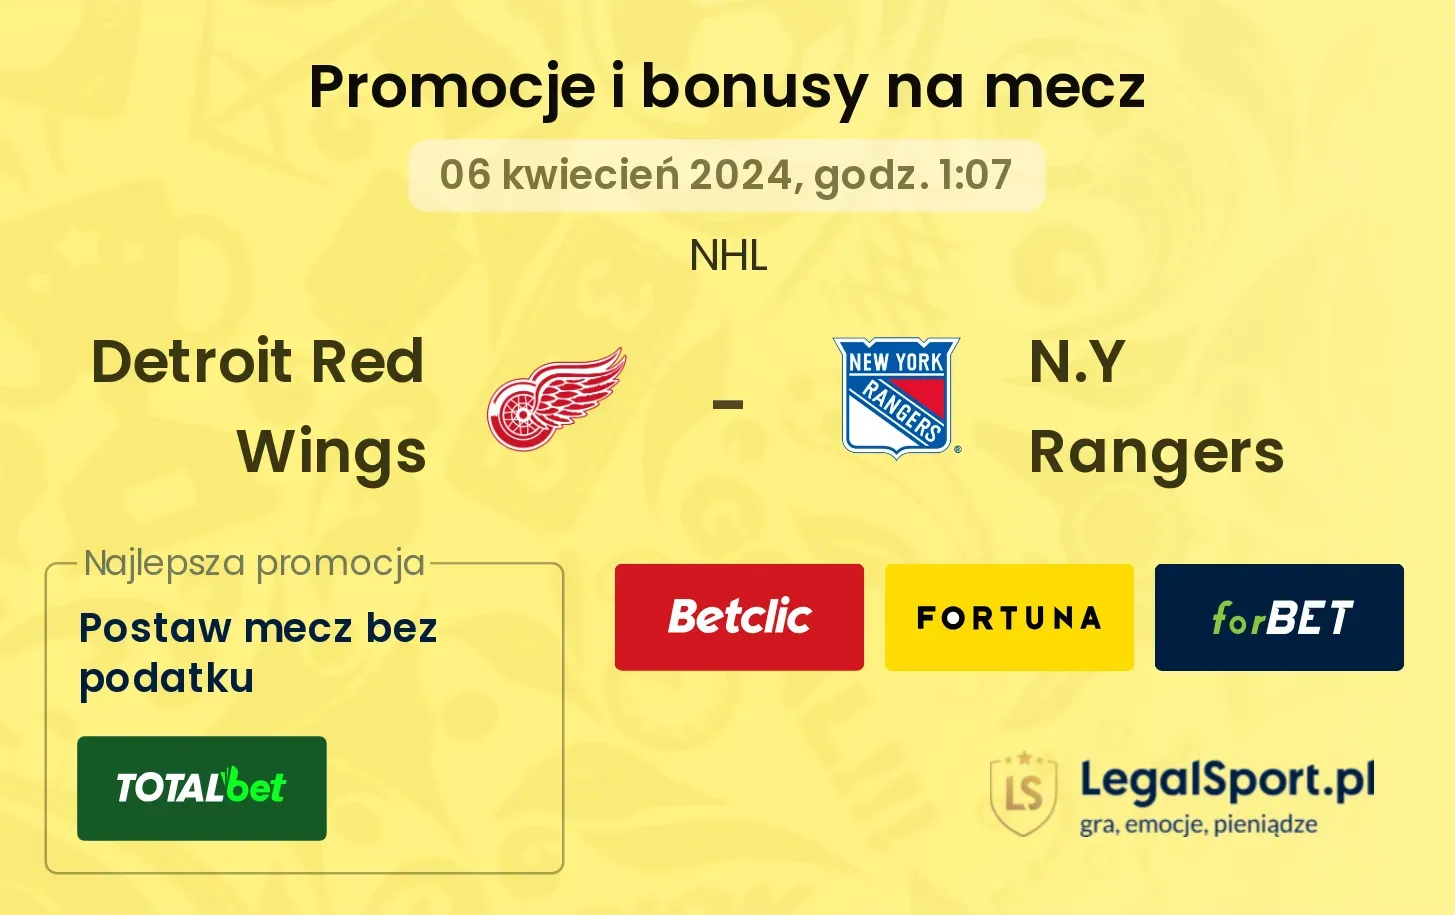 Detroit Red Wings - N.Y Rangers promocje bonusy na mecz